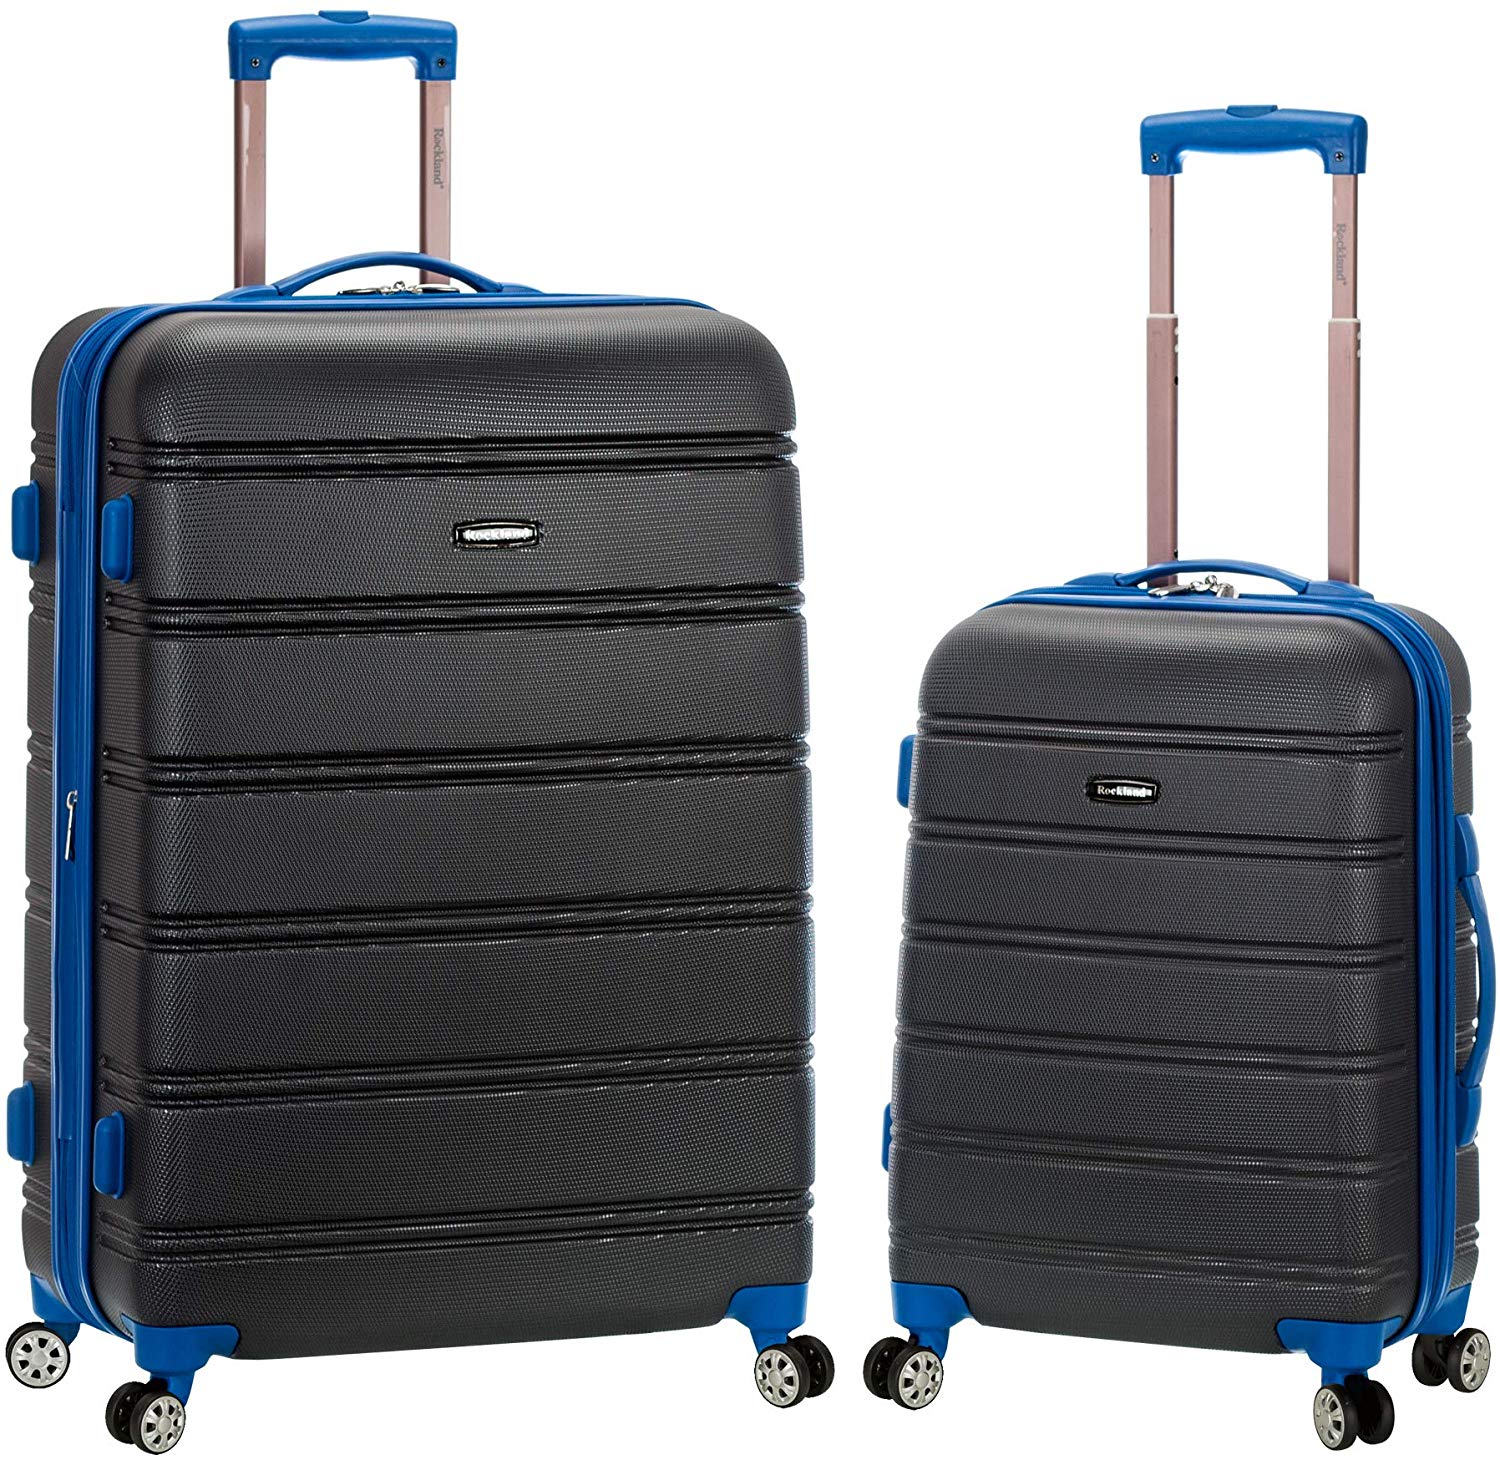 Rockland Melbourne Lightweight Traveler Suitcase, 2-Piece